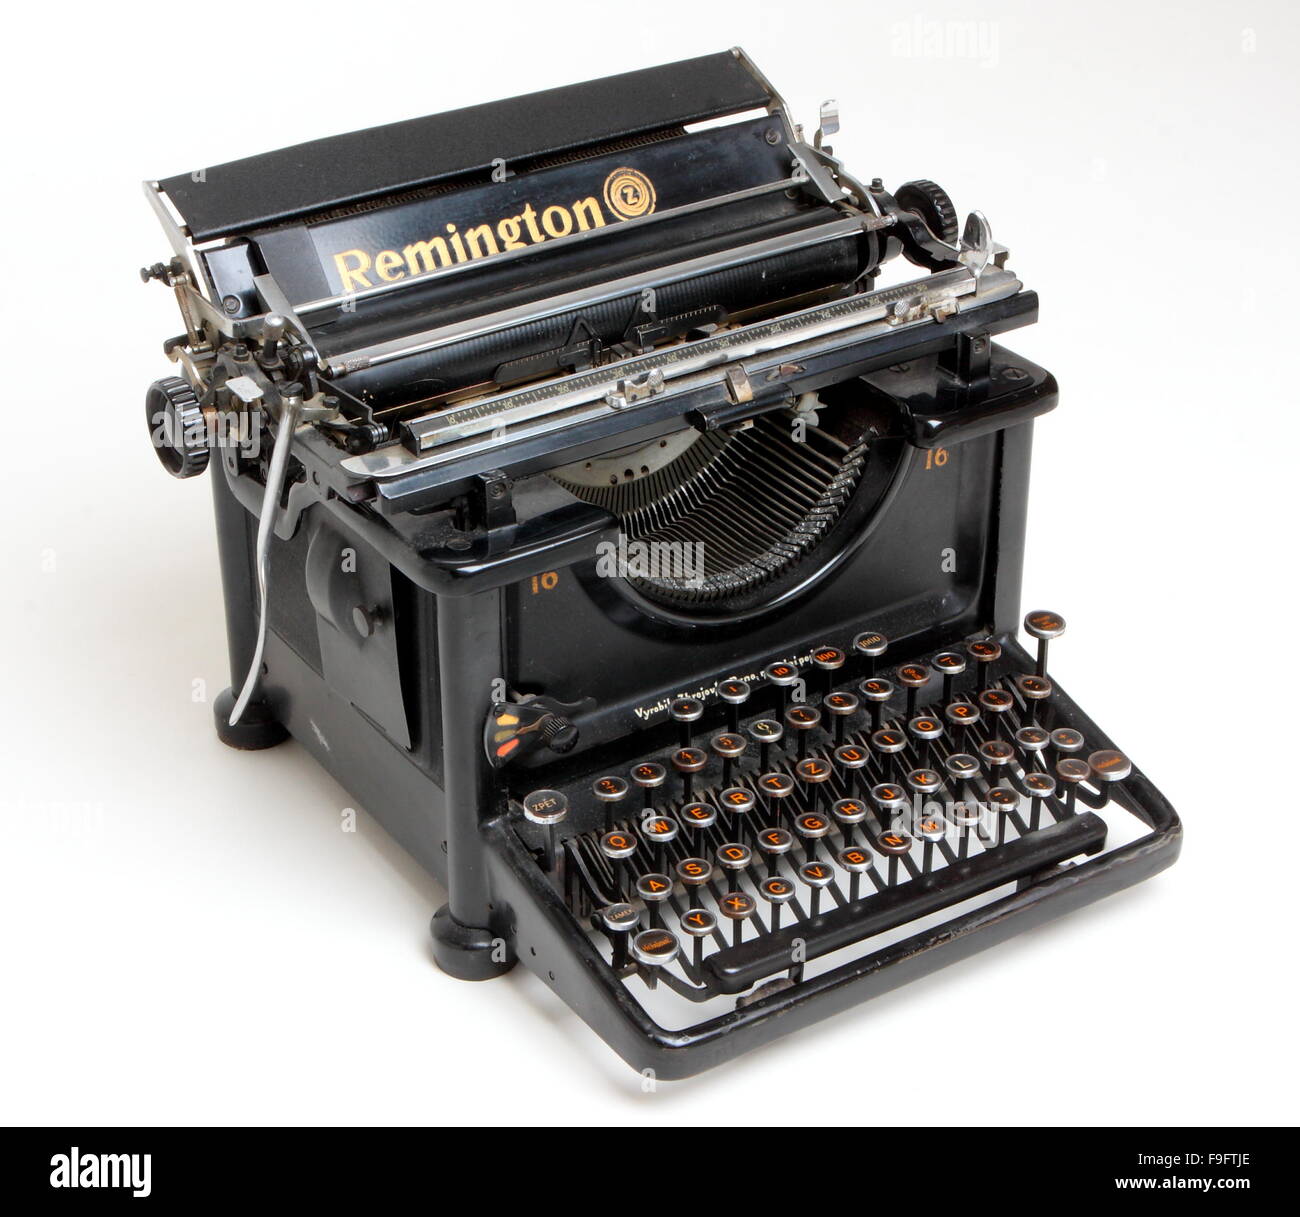 antigua-maquina-de-escribir-remington-f9ftje.jpg